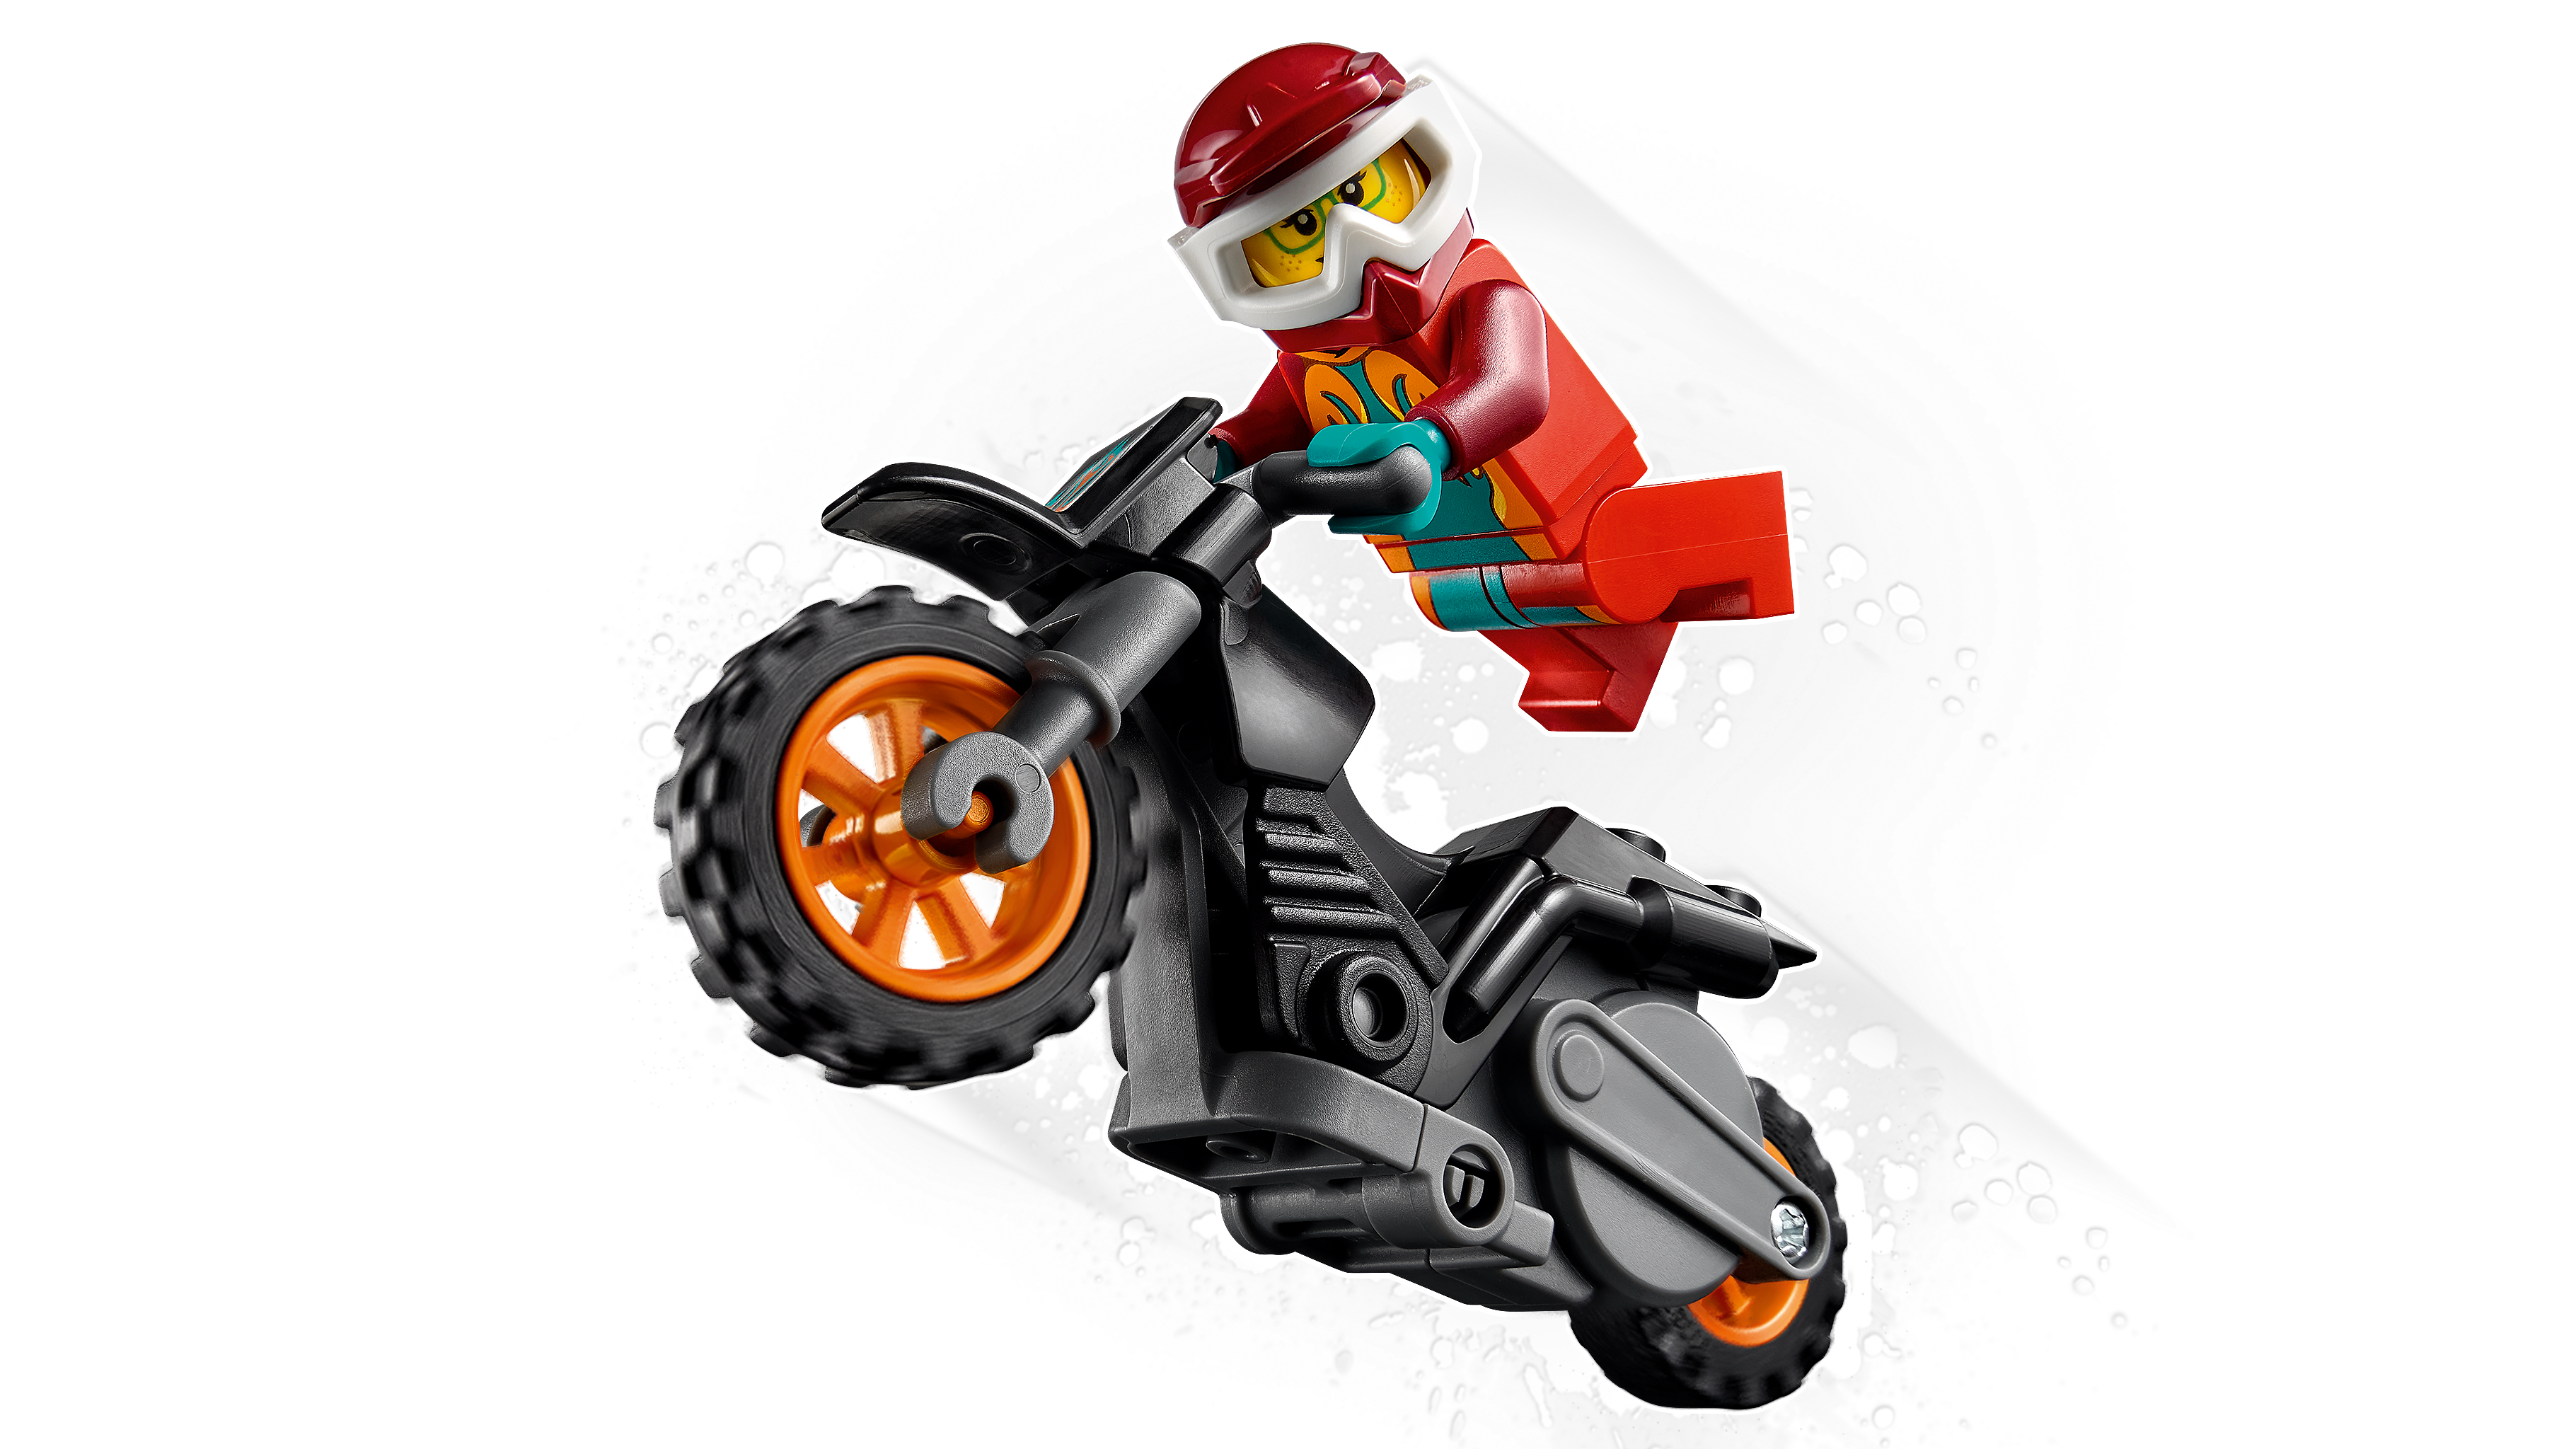 Lego 60311 Fire Stunt Bike